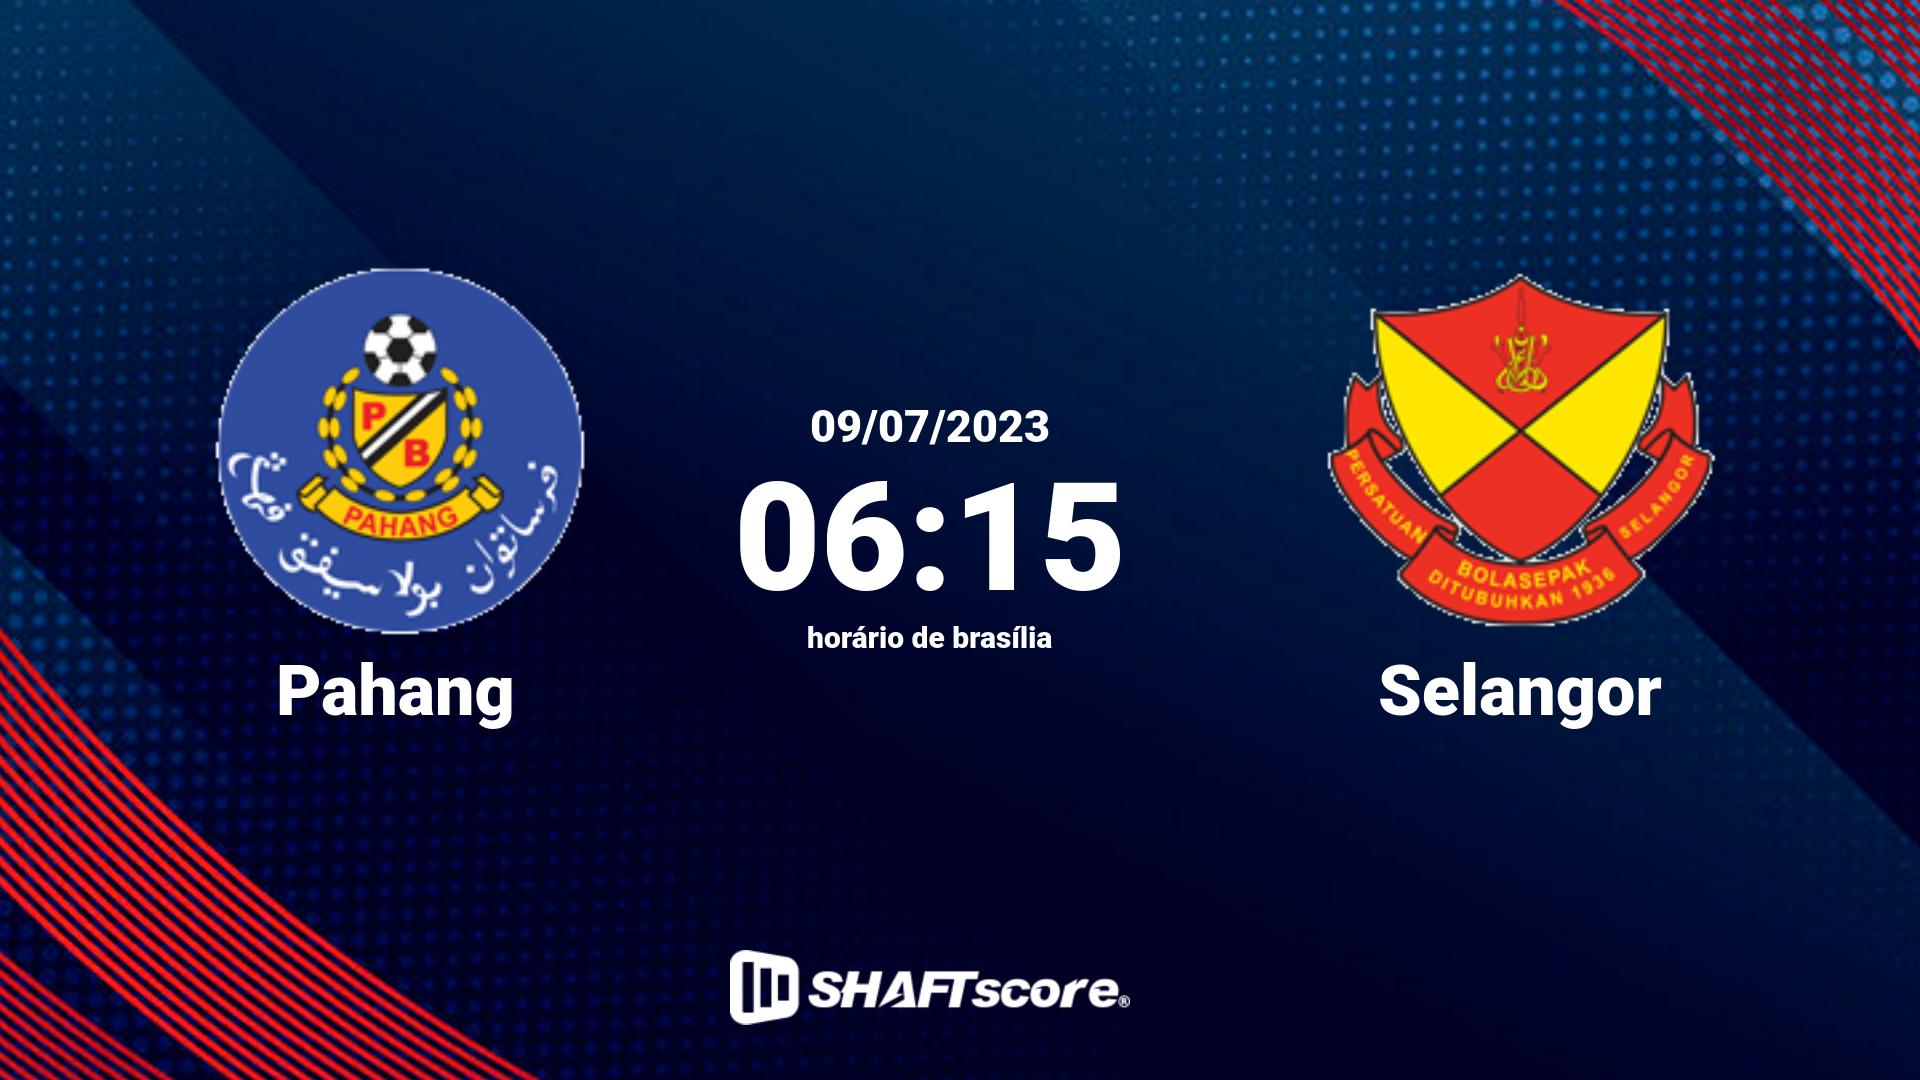 Estatísticas do jogo Pahang vs Selangor 09.07 06:15